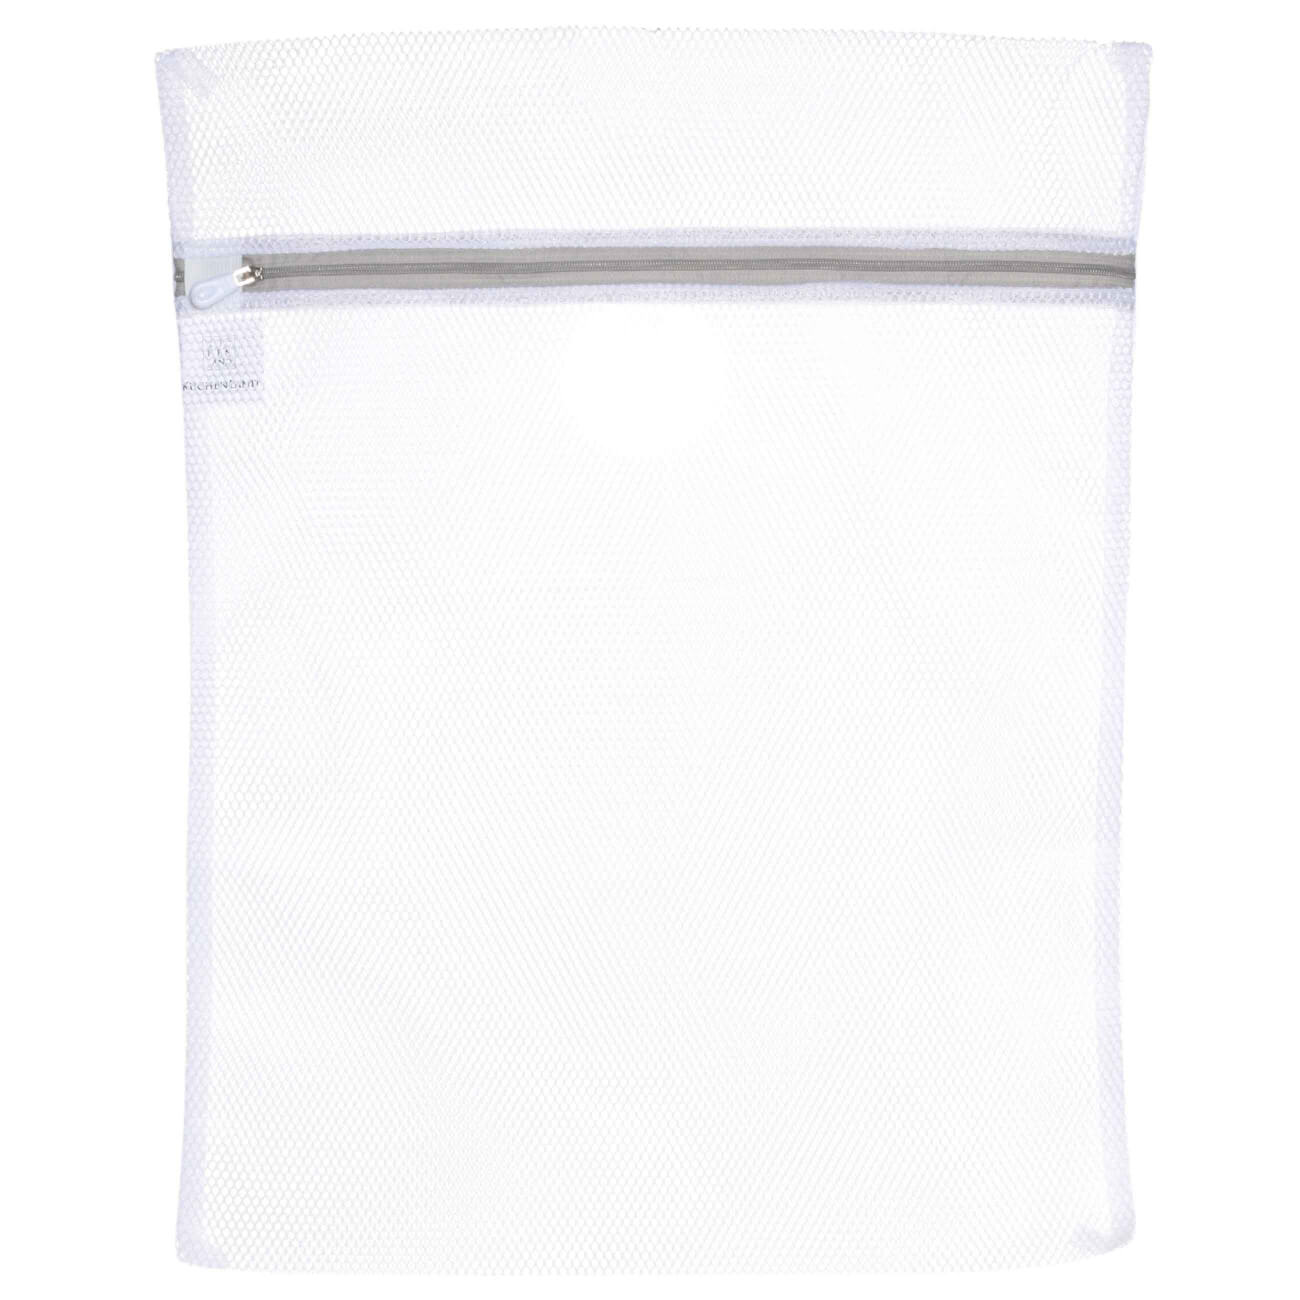 Мешок для стирки одежды, 40х50 см, полиэстер, бело-серый, Safety kuchenland мешок для стирки нижнего белья 38 см полиэстер safety plus